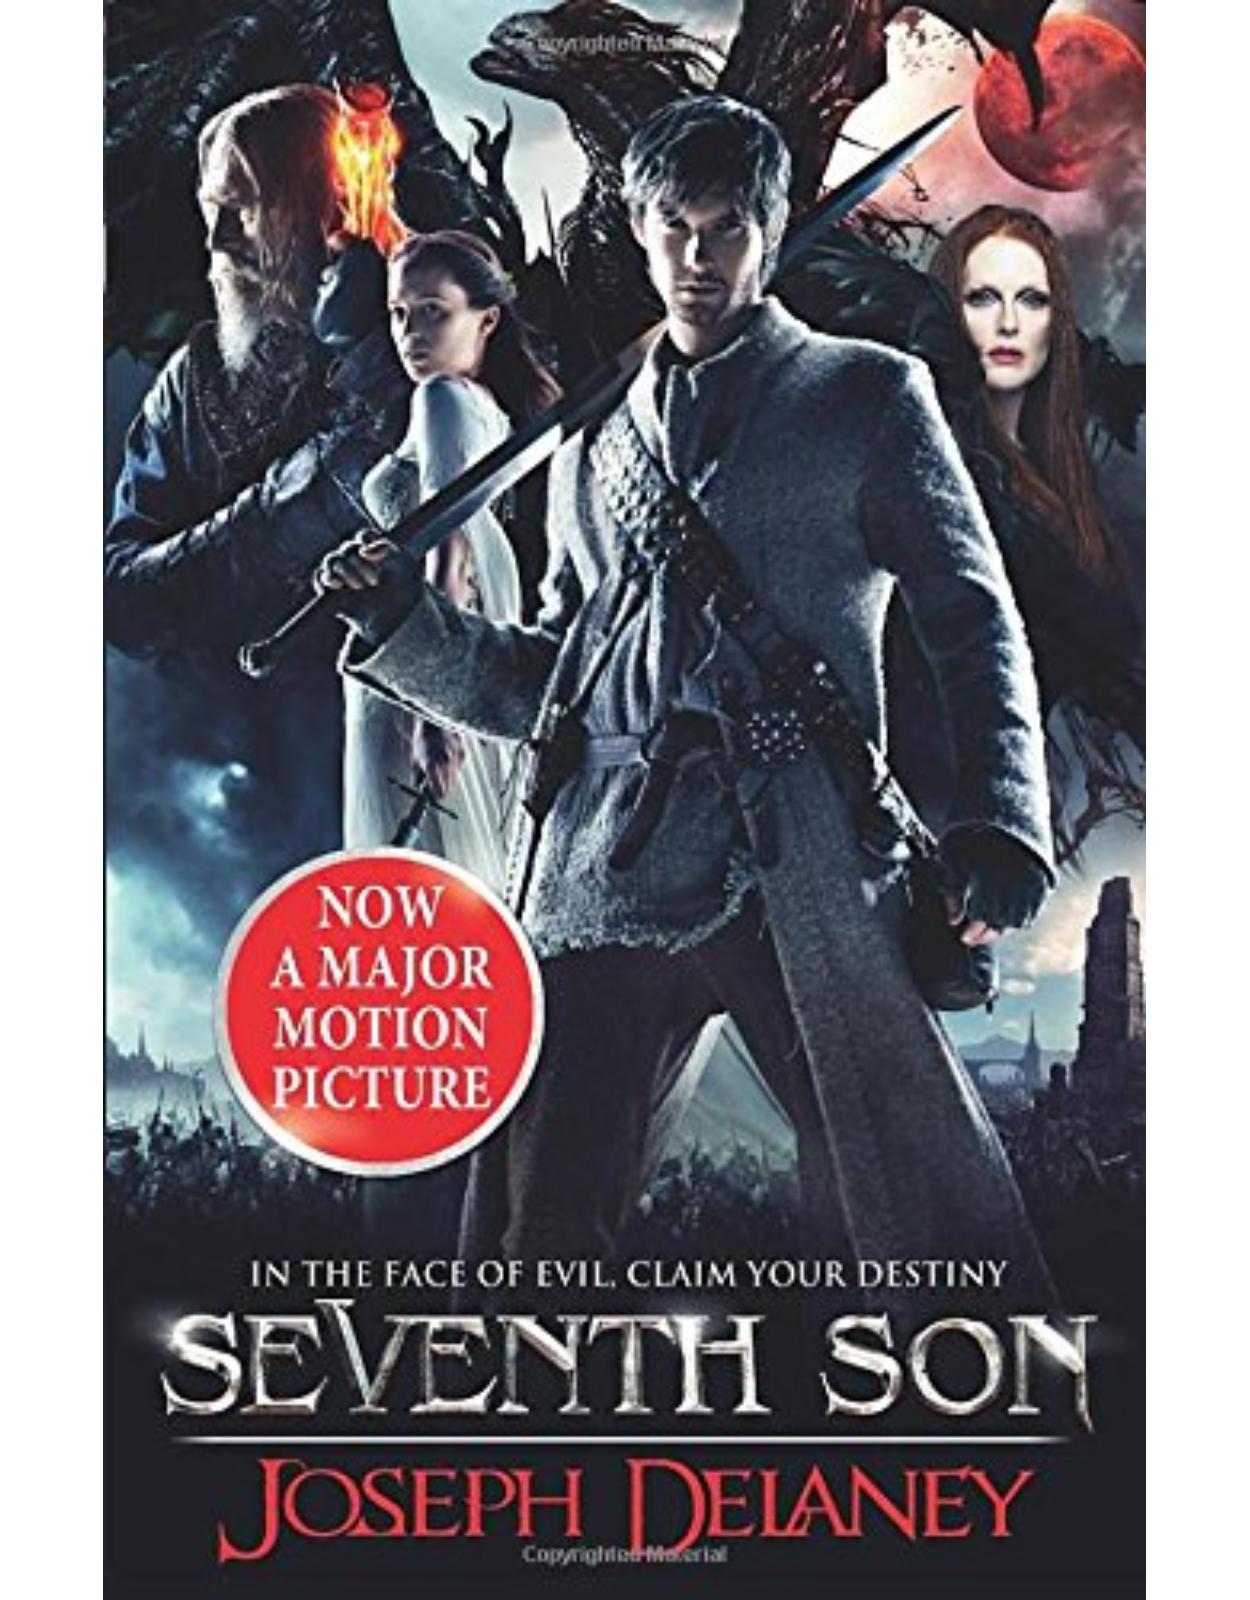 Seventh Son: The Spook's Apprentice Film Tie-in